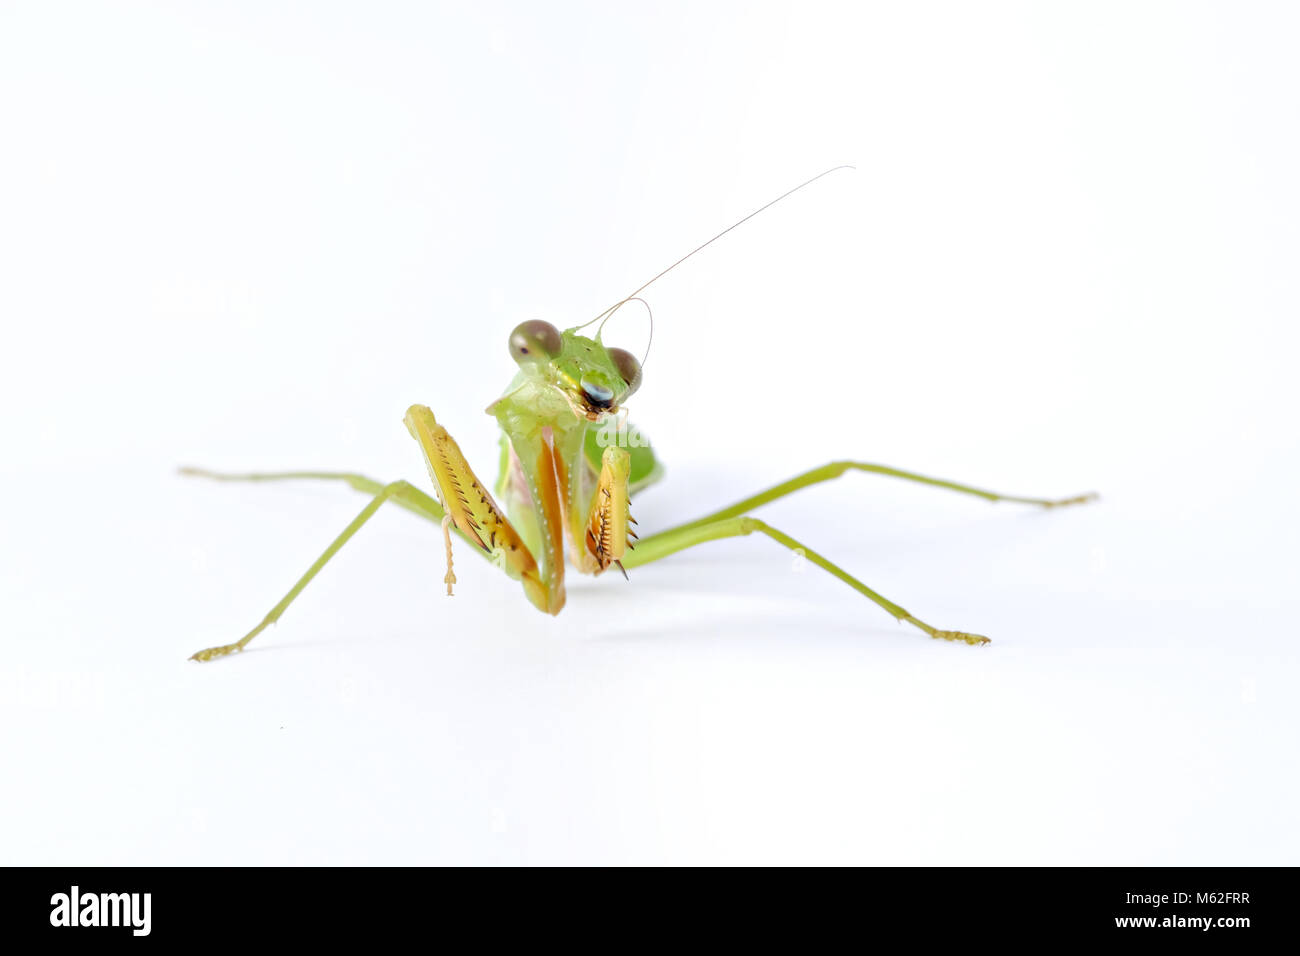 Female European Mantis or Mantis religiosa - animal behaviors front view isolated on white background. Stock Photo